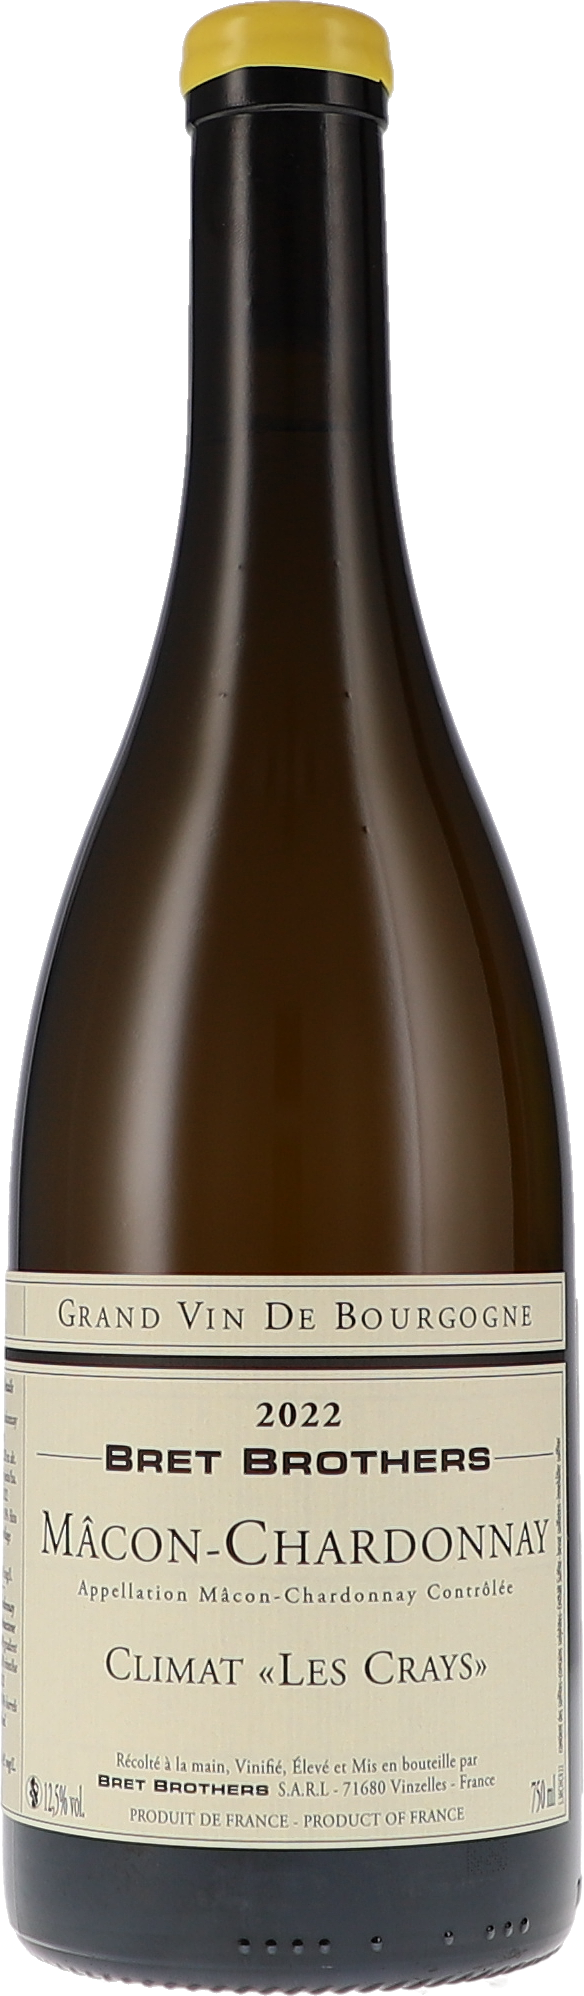 Mâcon-Chardonnay Climat "Les Crays" AOC